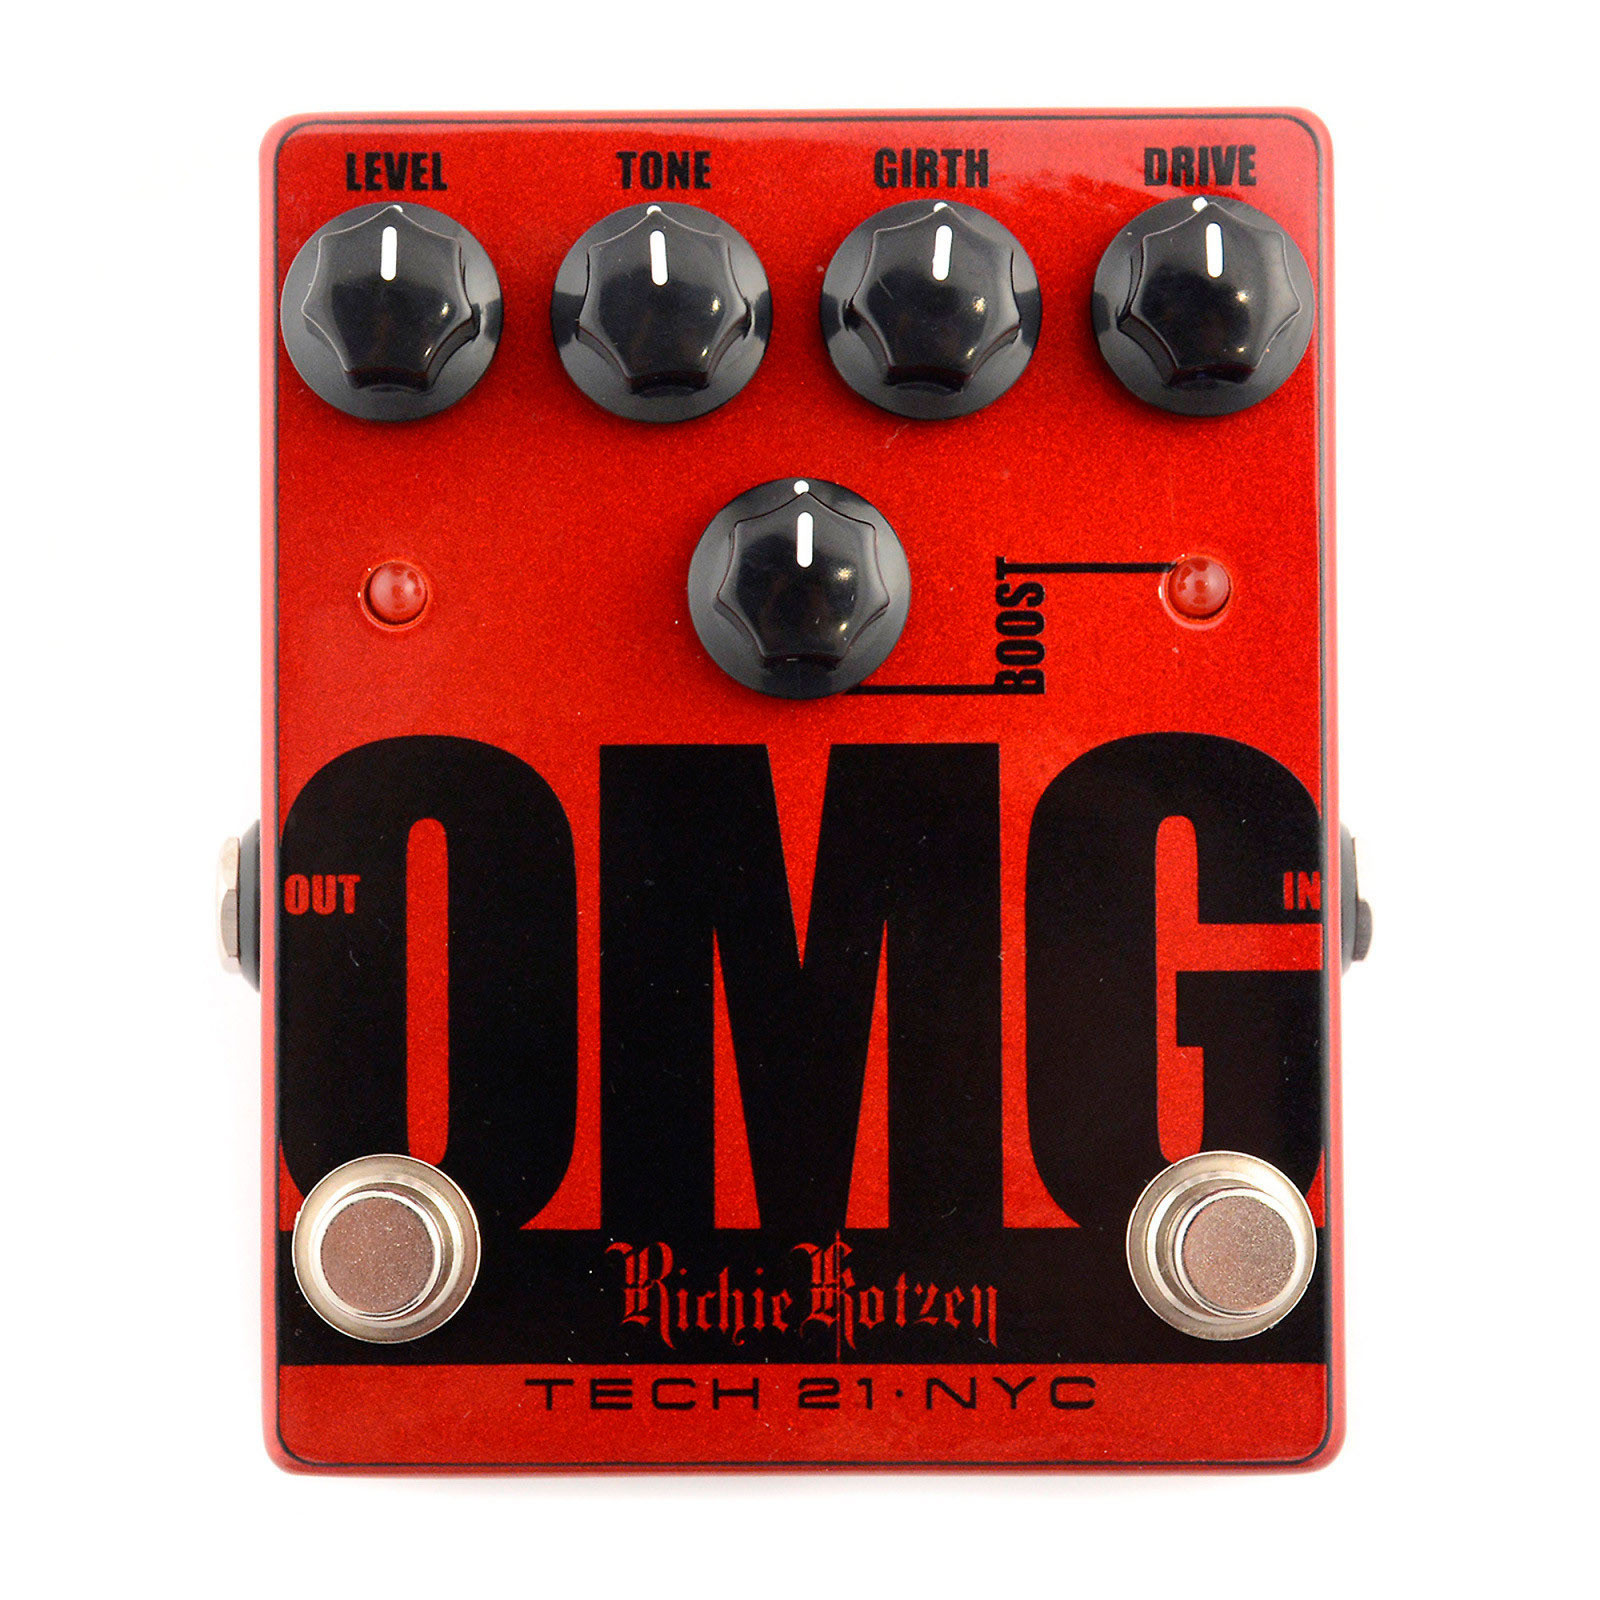 Pedal overdrive para guitarra Richie Kotzen Tech 21 OMG